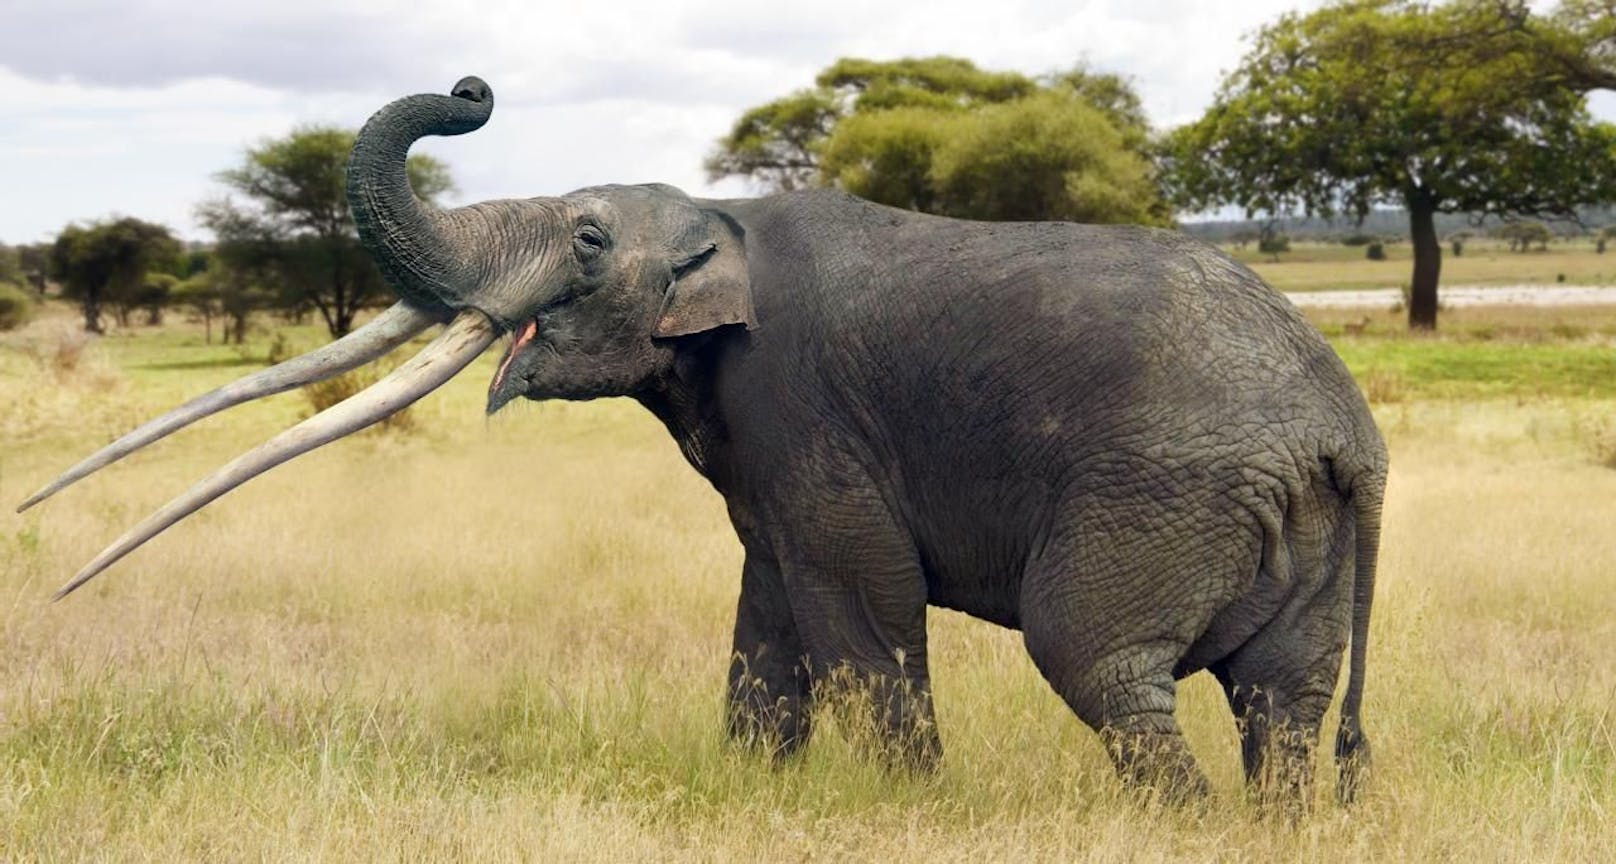 Das Kind wurde von einem Elefanten angegriffen (Symbolbild)